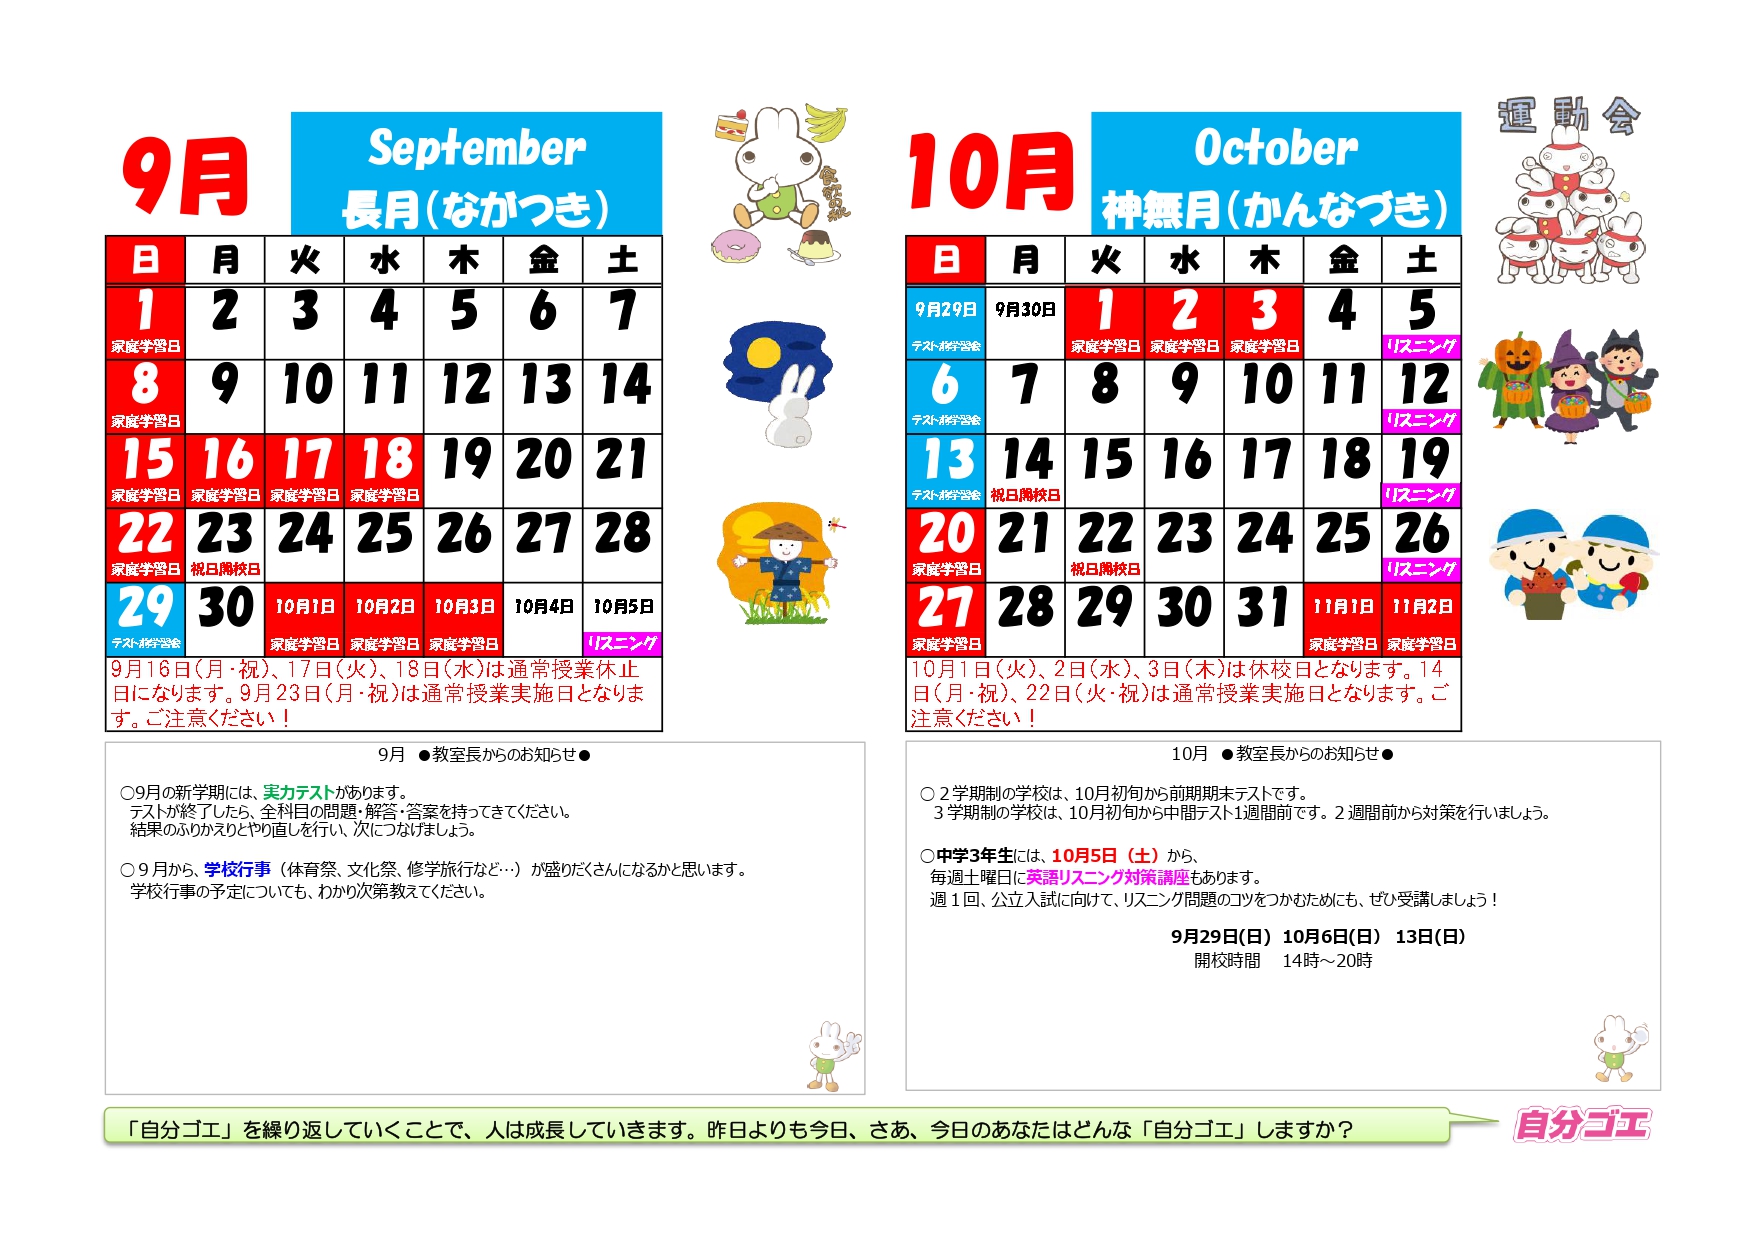 【2019年度】ブースカレンダー2019年9月10月(よこ）_page-0001.jpg